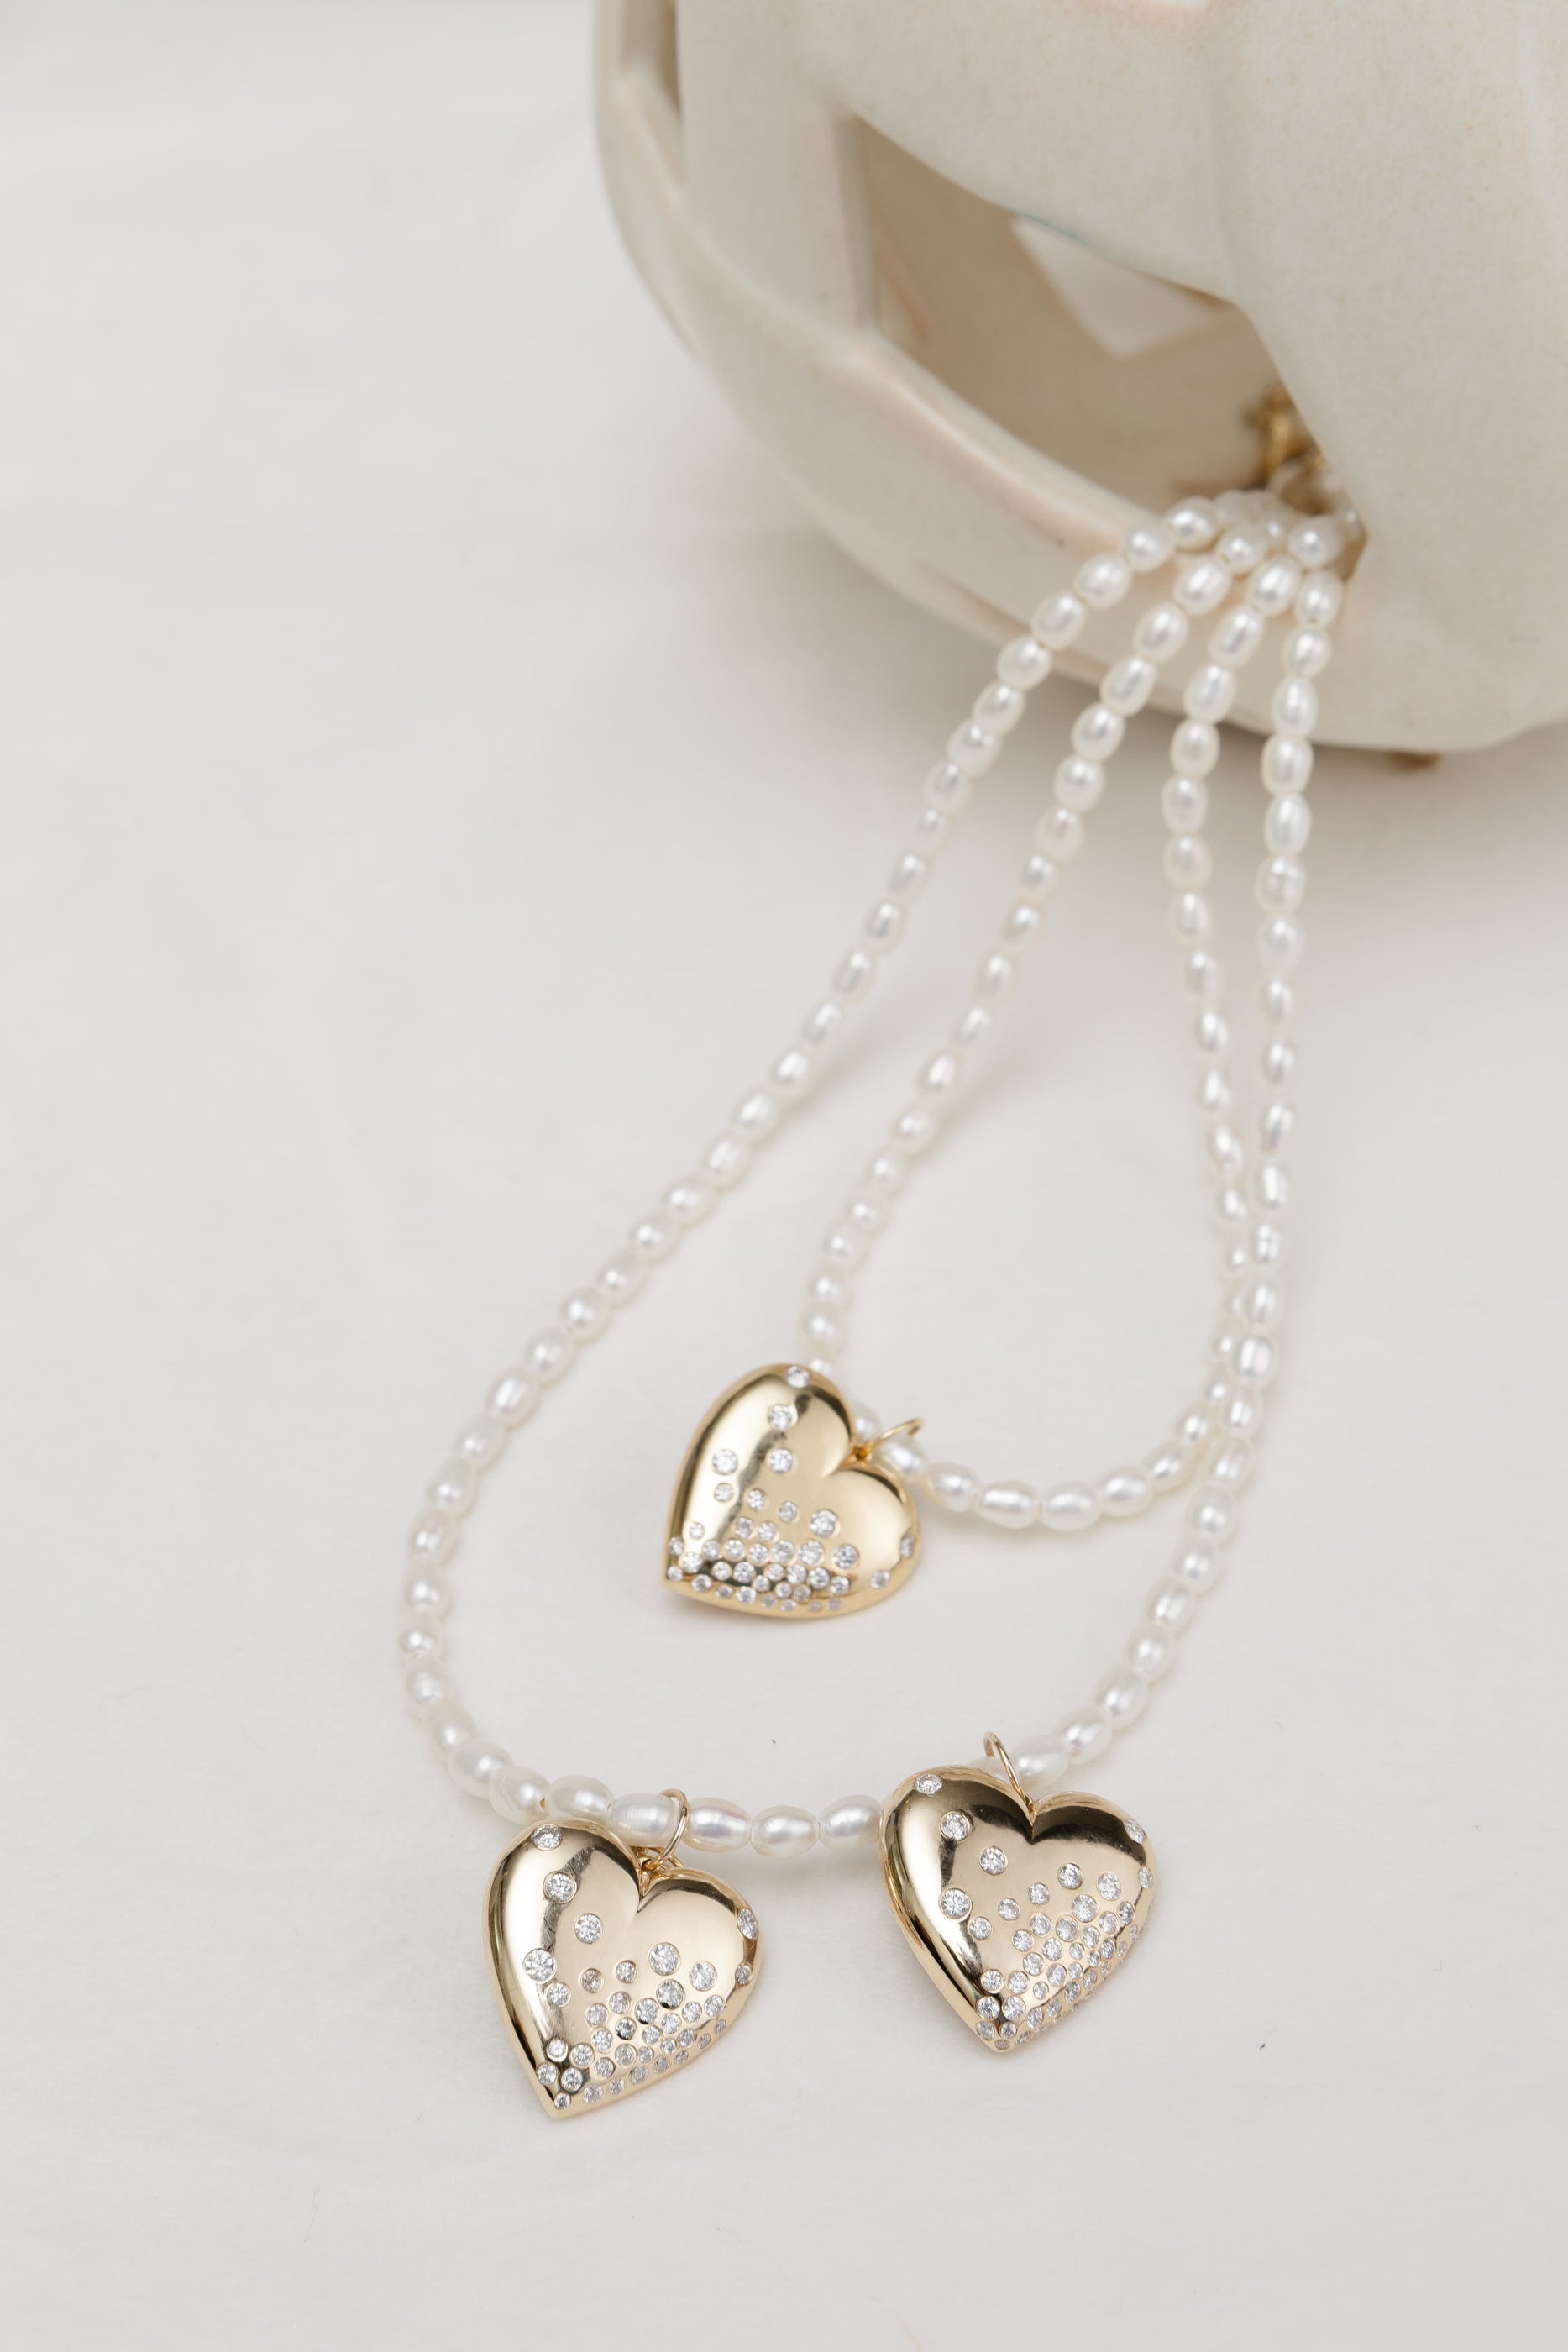 Yellow Gold Diamond Puffy Heart Pendant